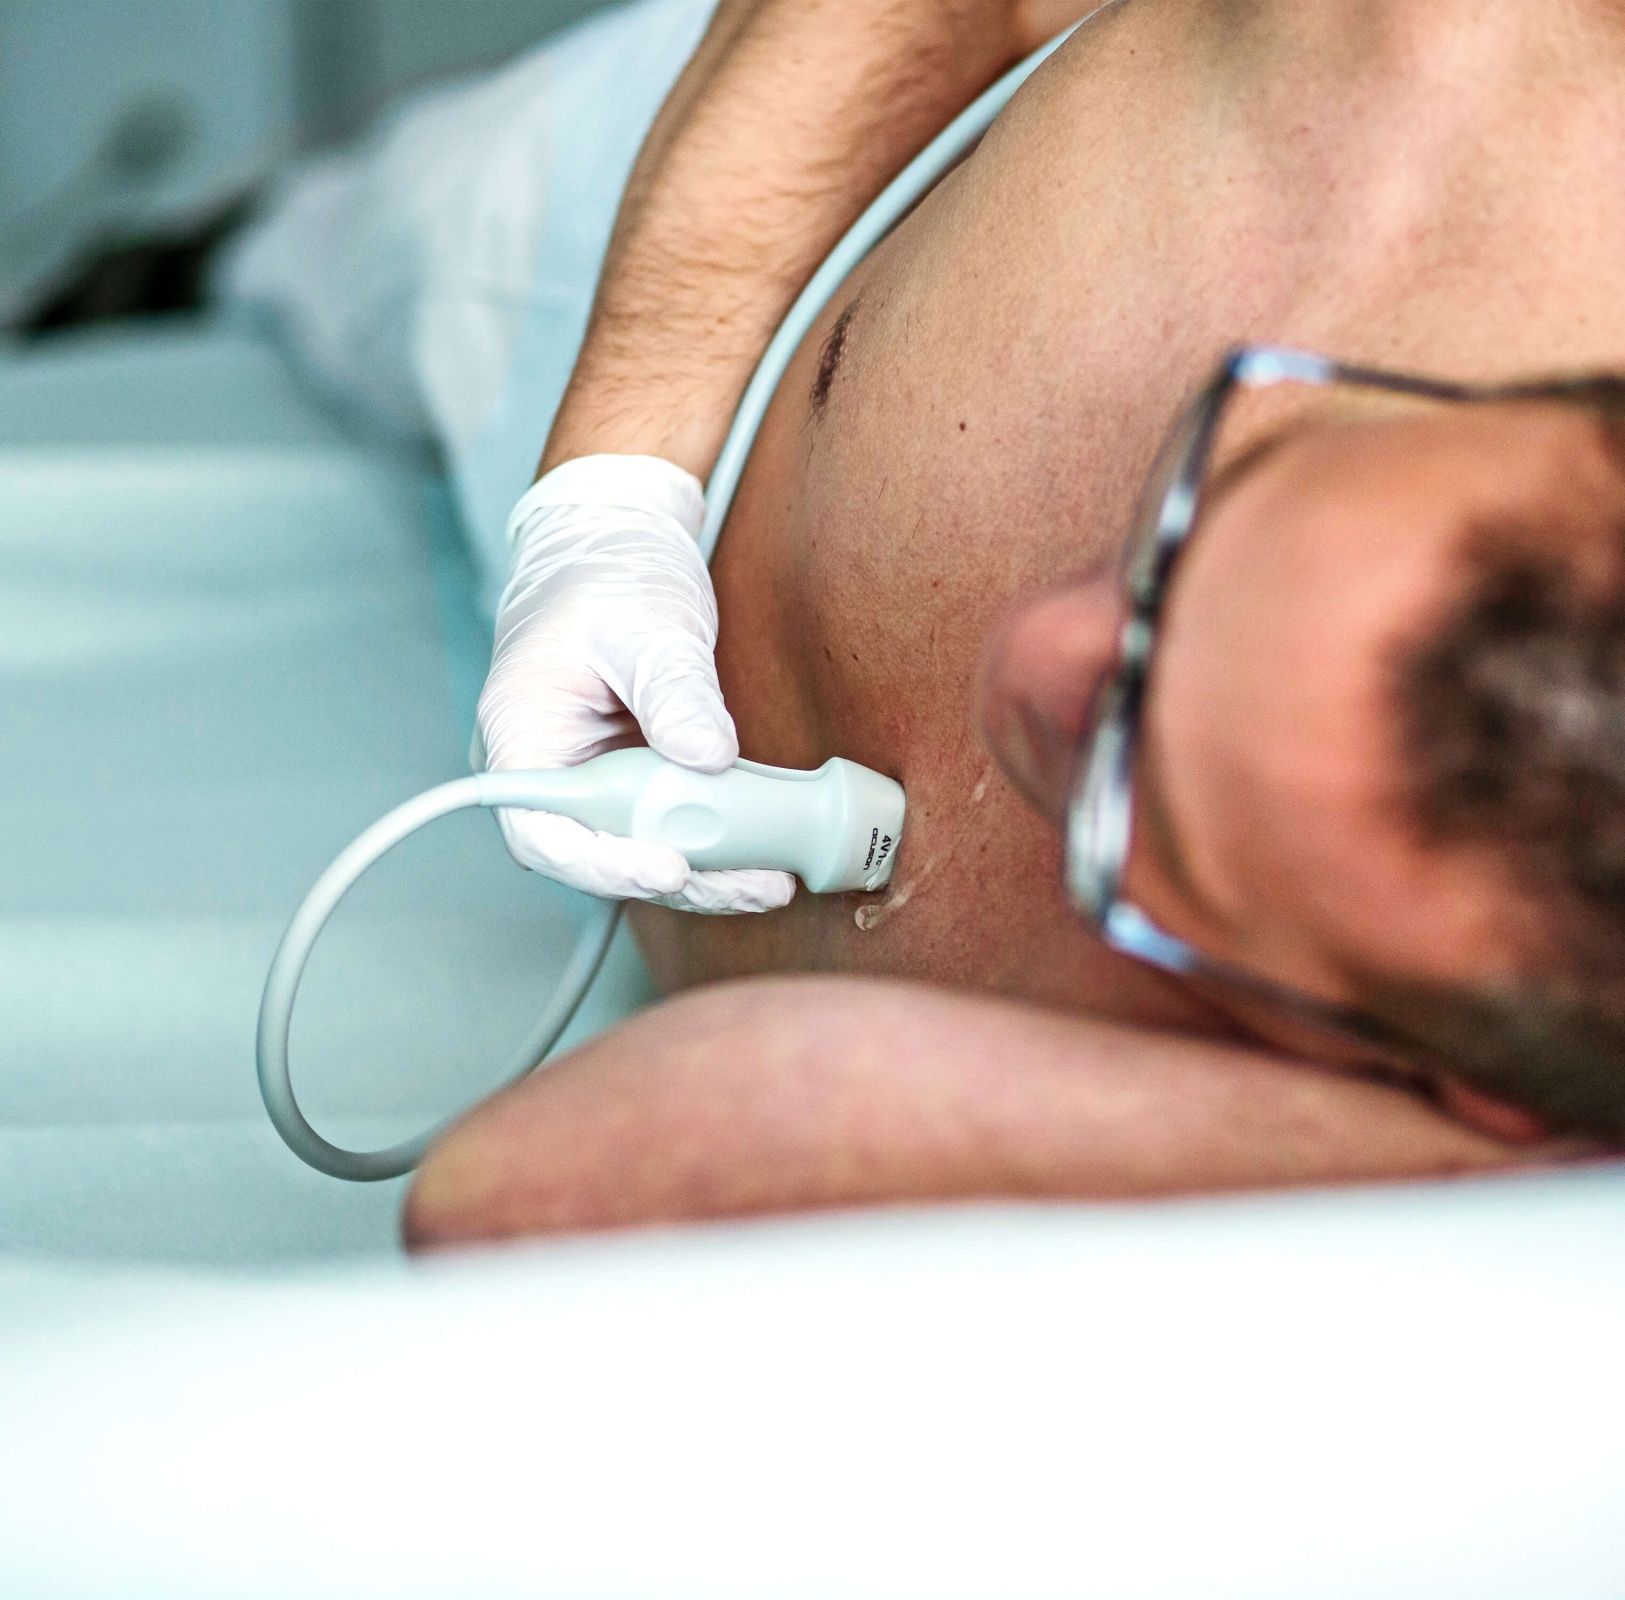 Arzt führt Ultraschall bei einem männlichen Patienten durch